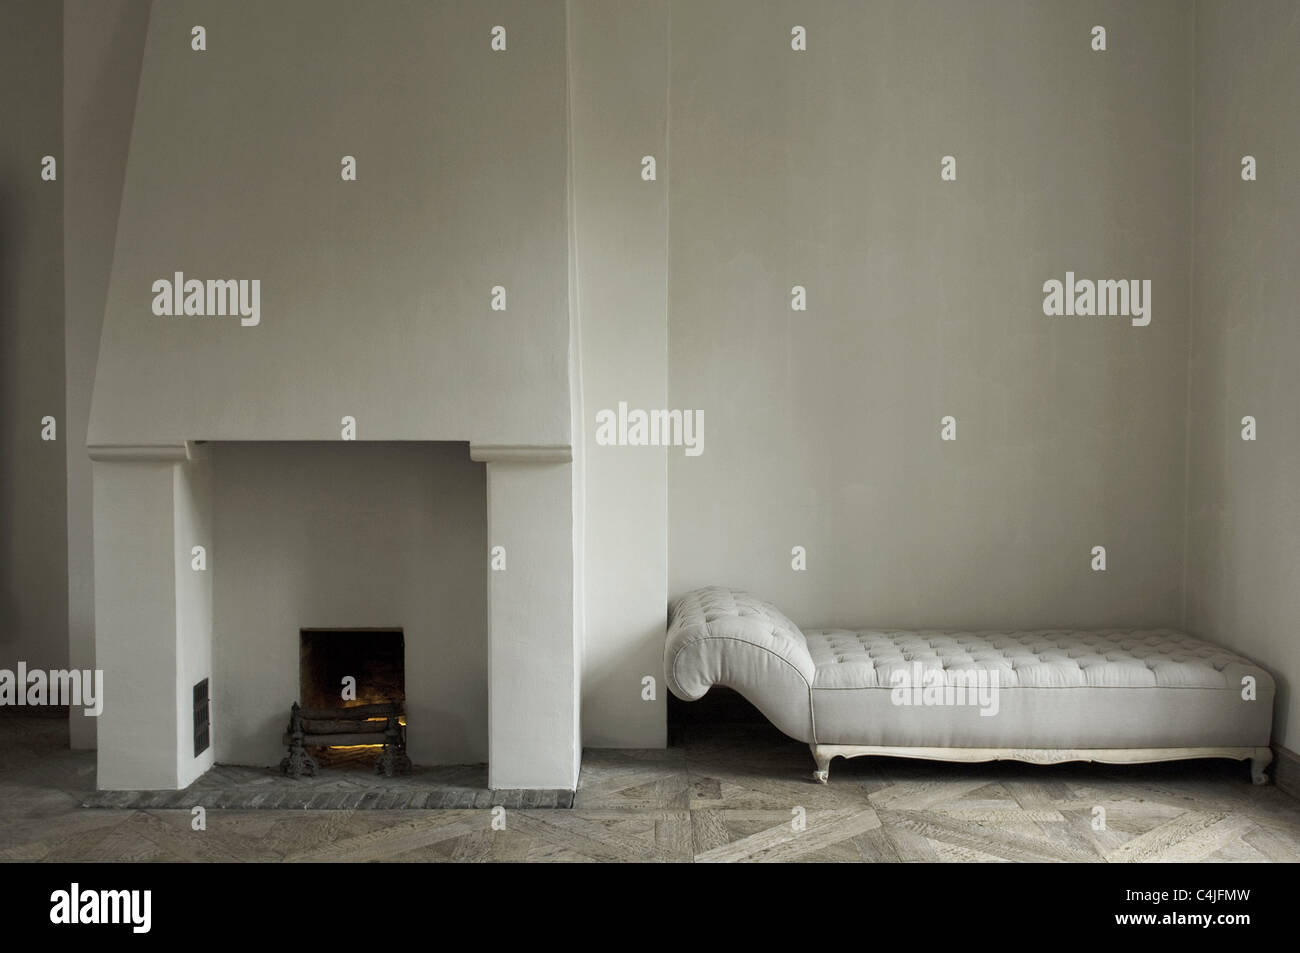 chimney and sofa Stock Photo